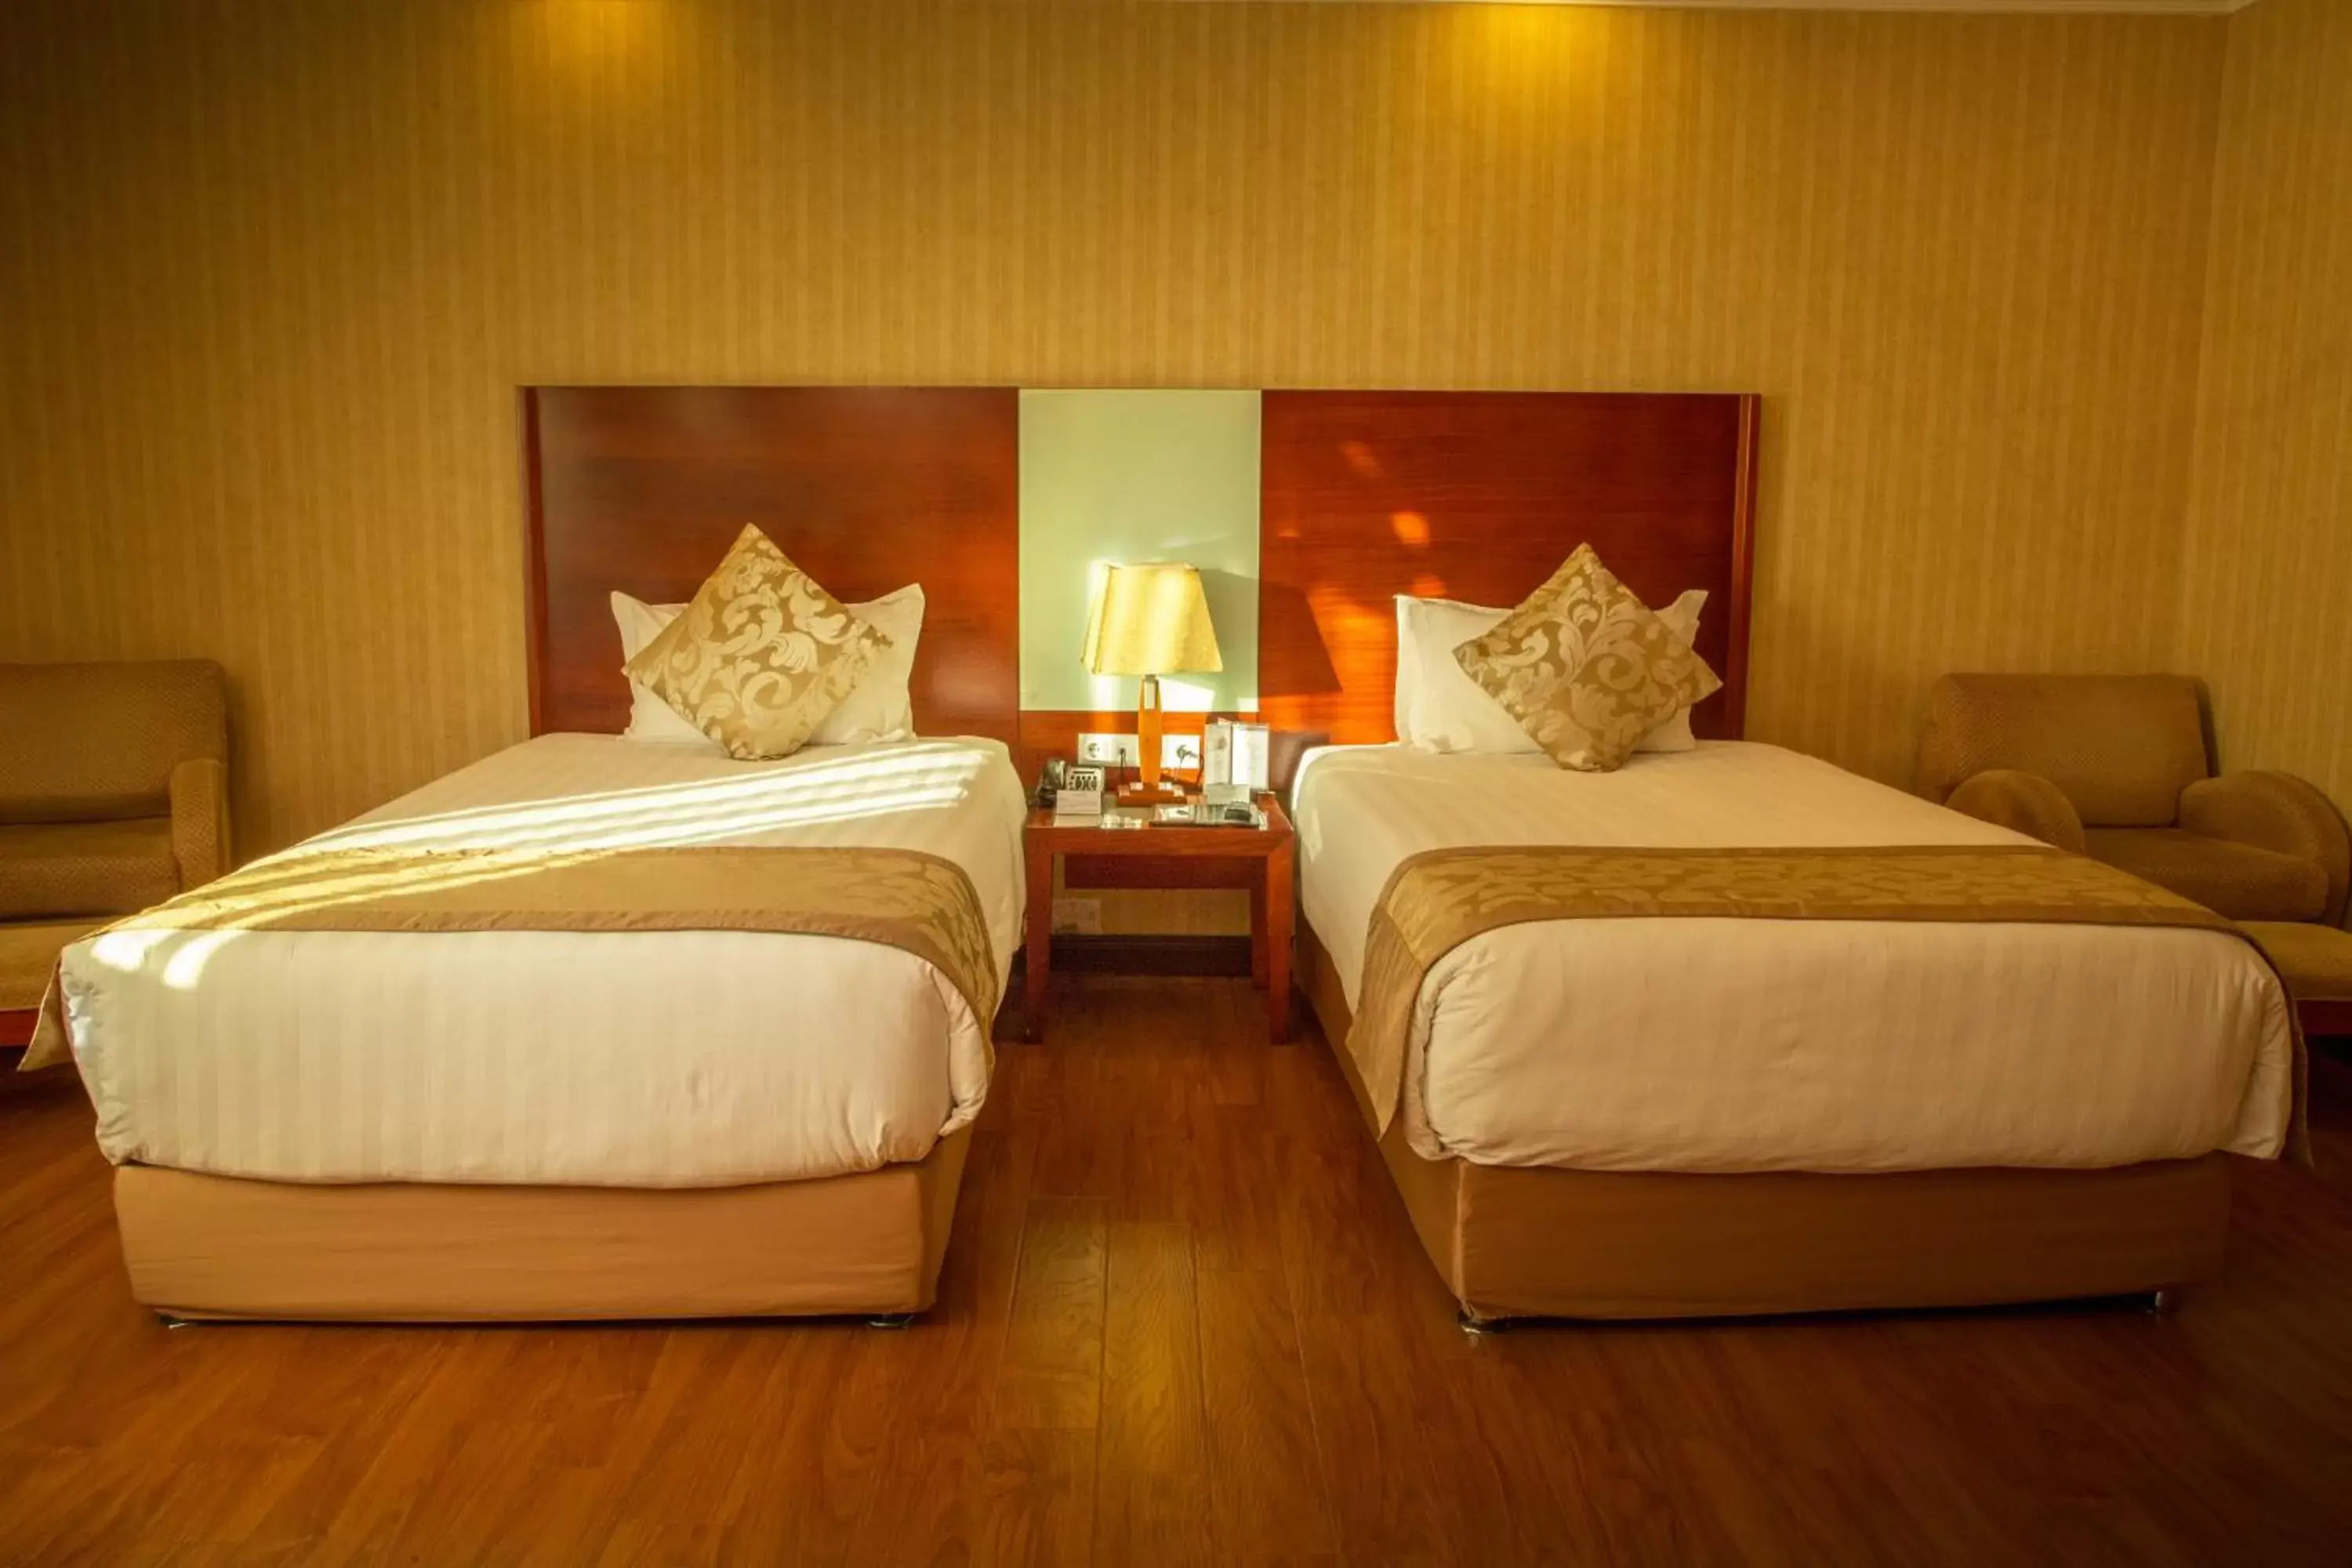 Bed in Jupiter International Hotel - Bole